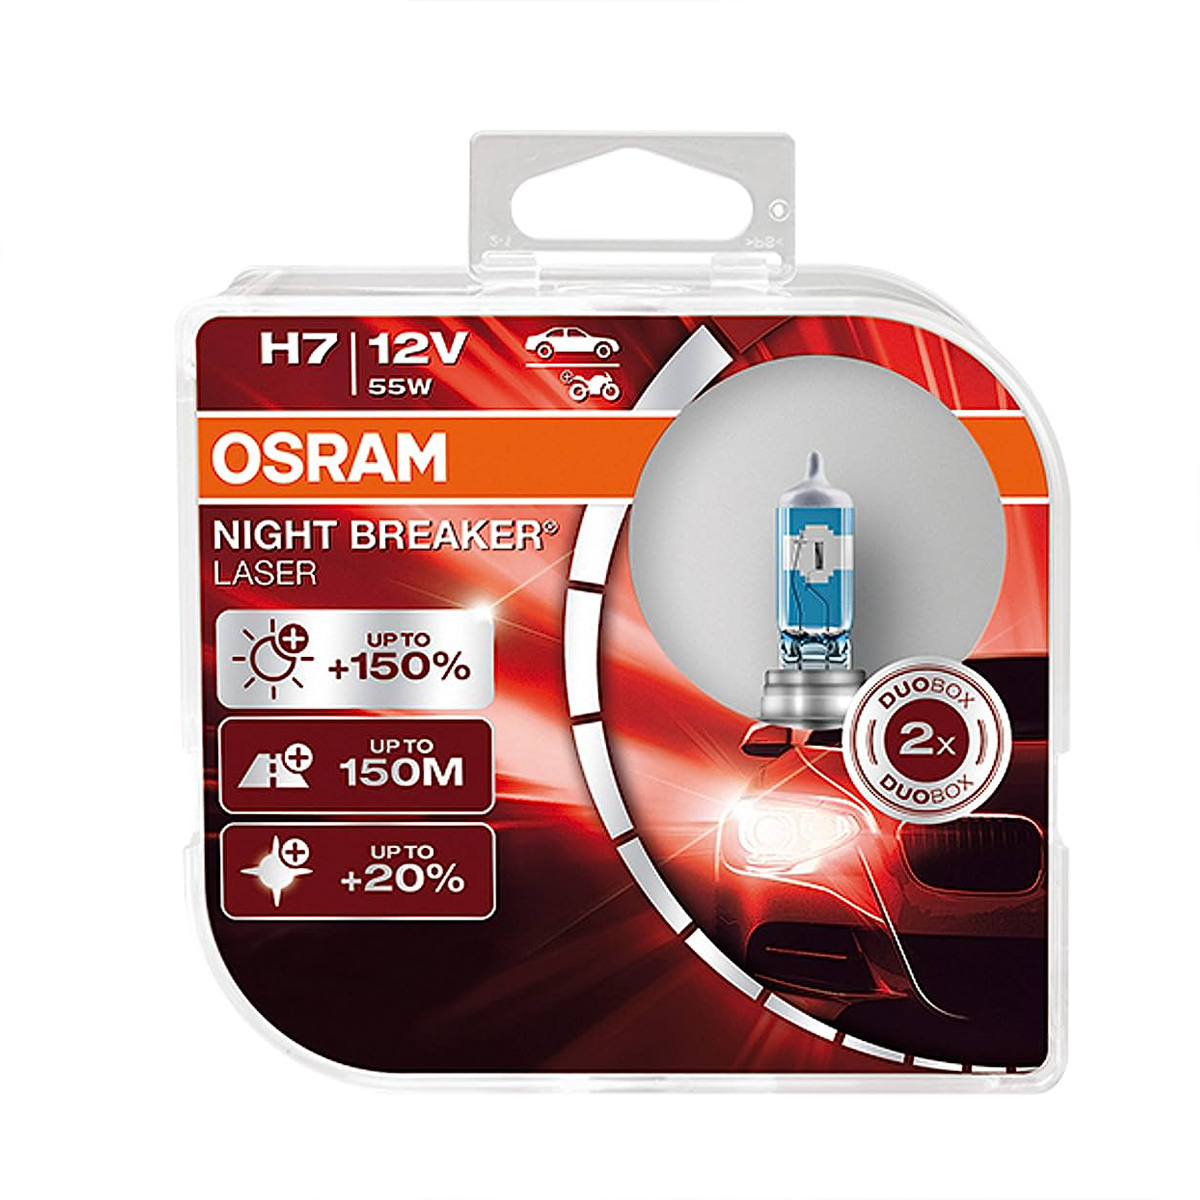 لامپ هالوژن H7 مدل نایت بریکر لیزر %150 NBL اسرام – Osram (اصلی)